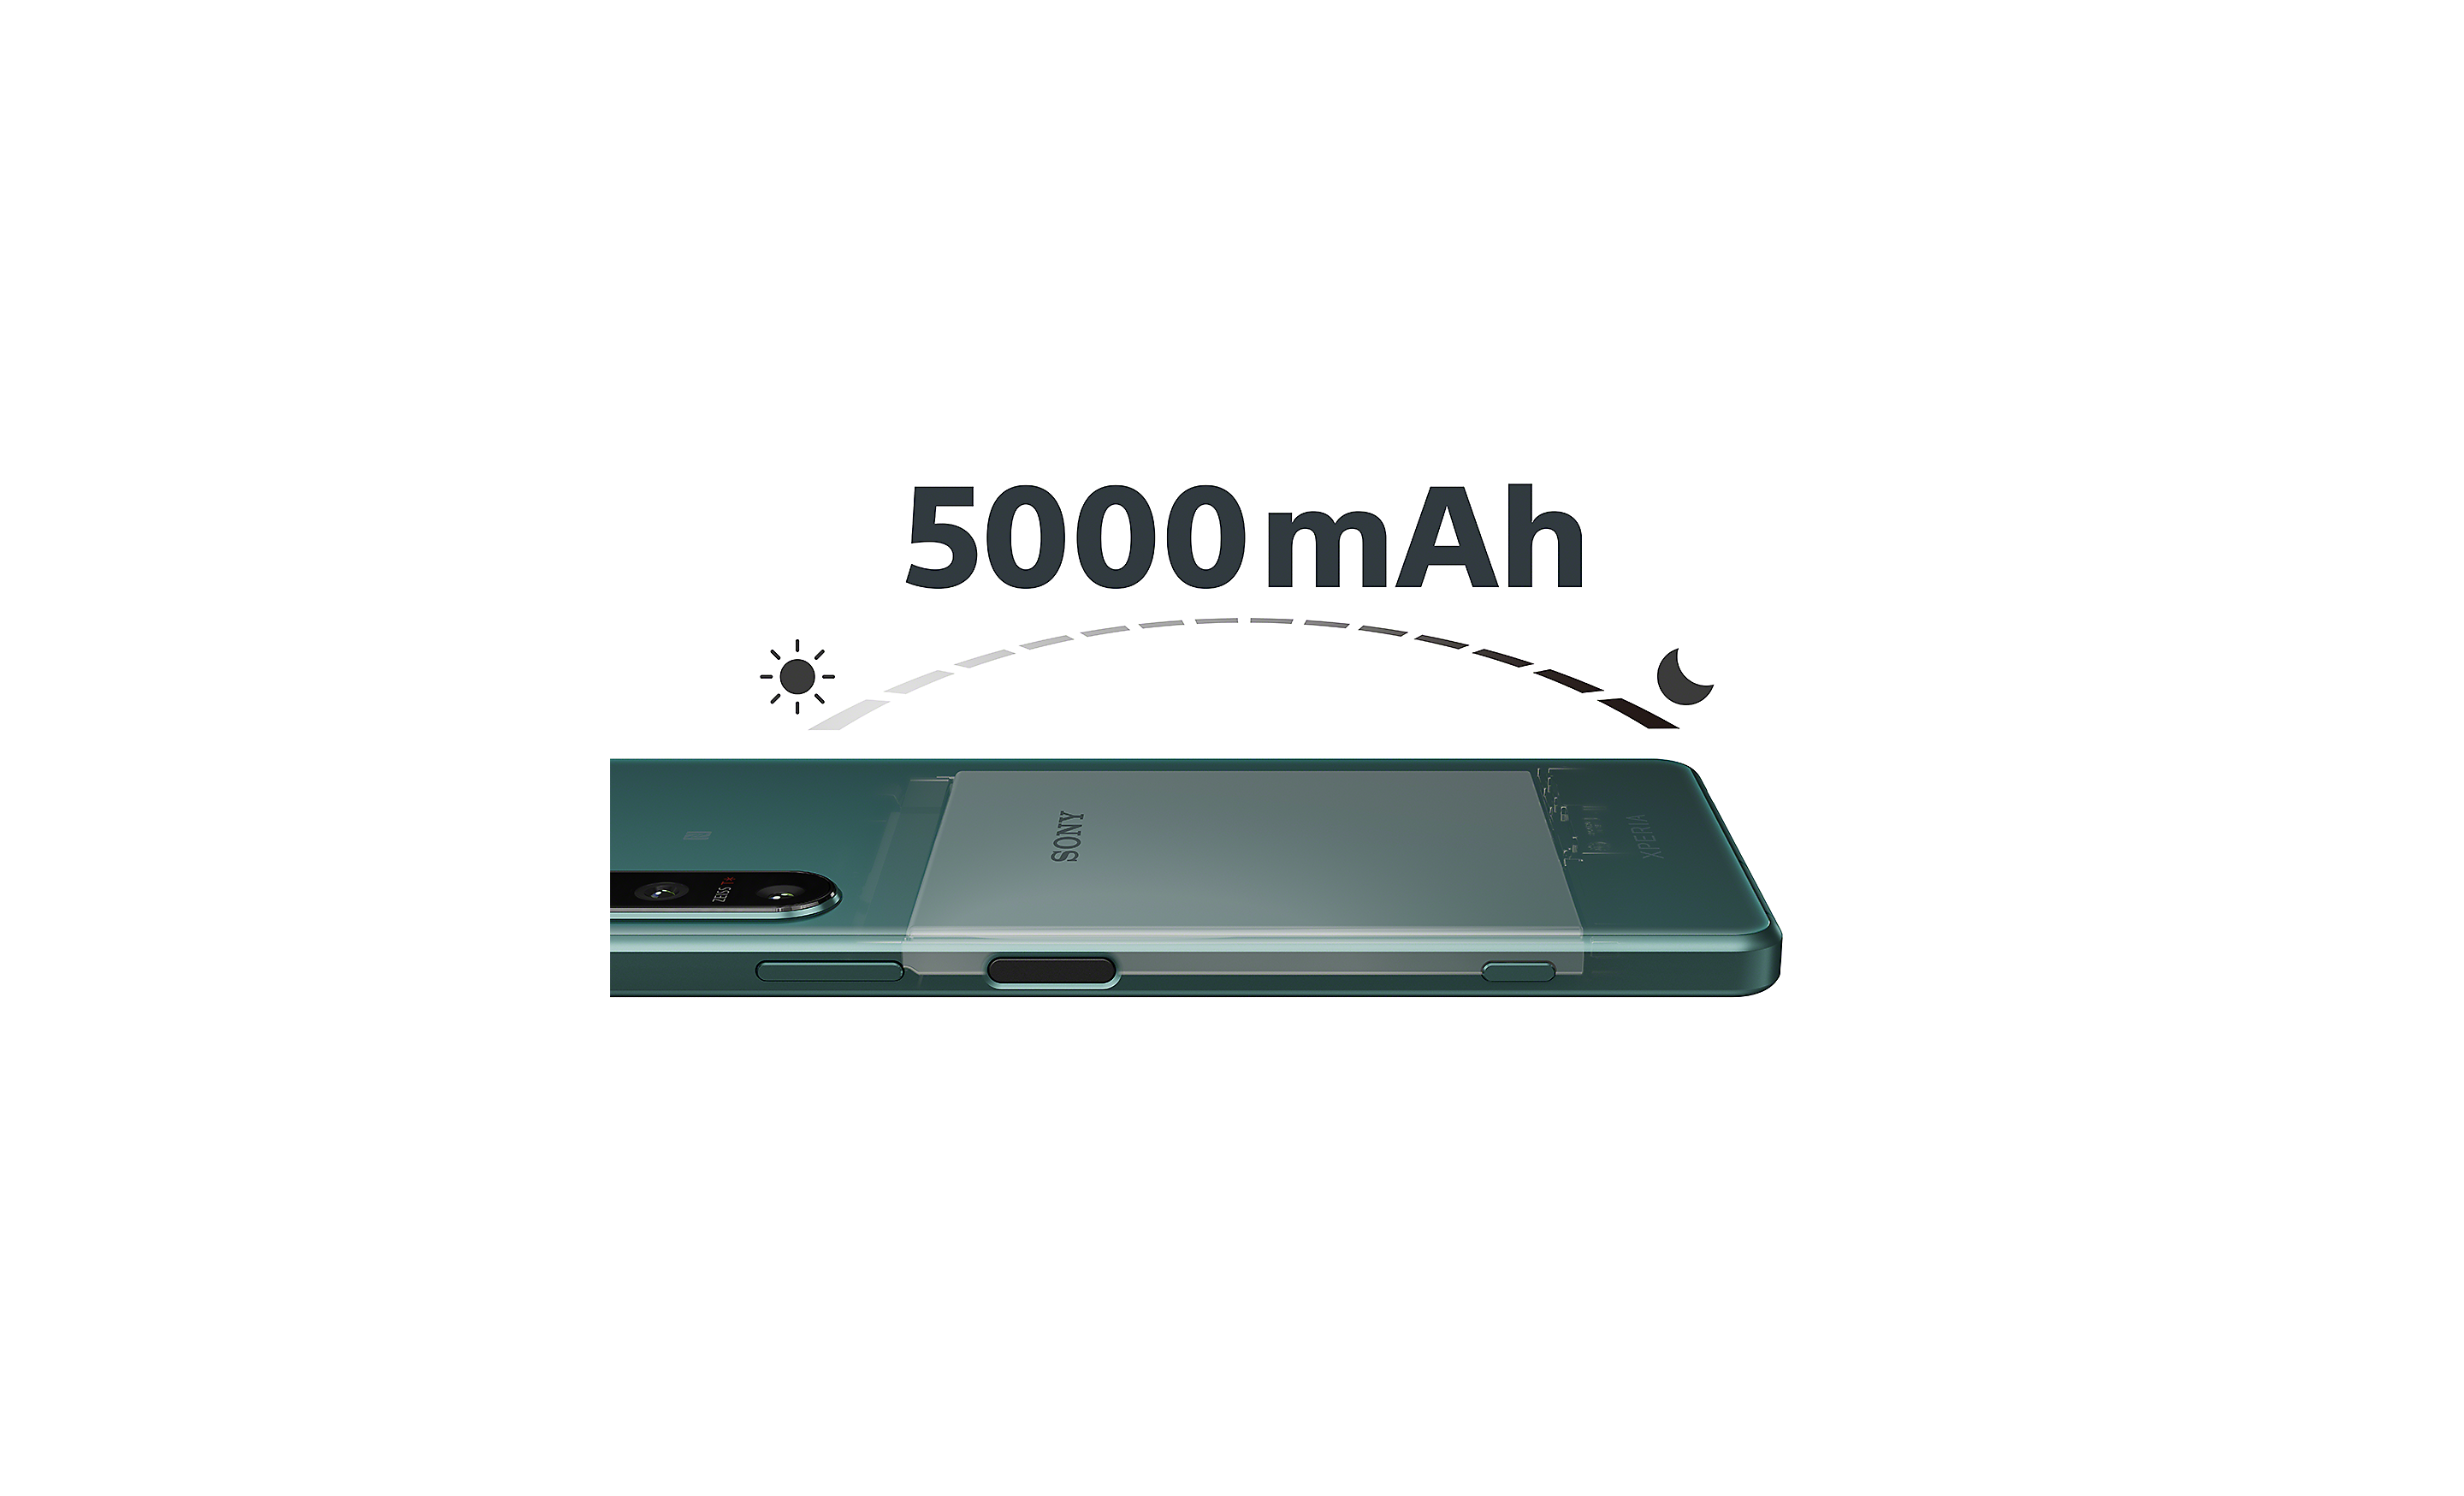 Imagine tip raze X cu Xperia 5 IV prezentând bateria mare, alături de logo 5000mAh și simbol grafic semnificând de la zi la noapte